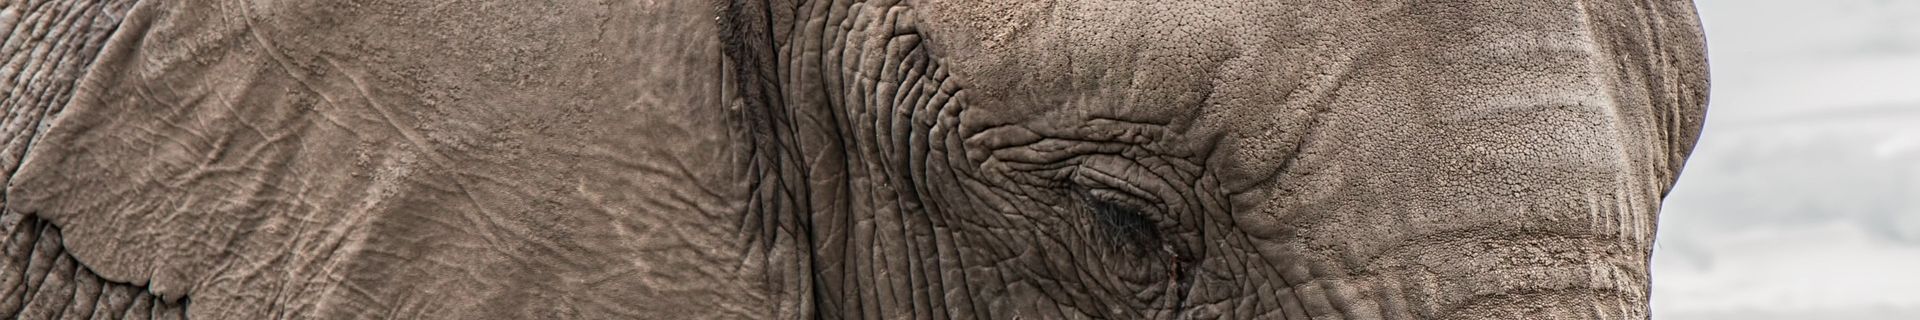 Elephant close up, Tarangire National Park